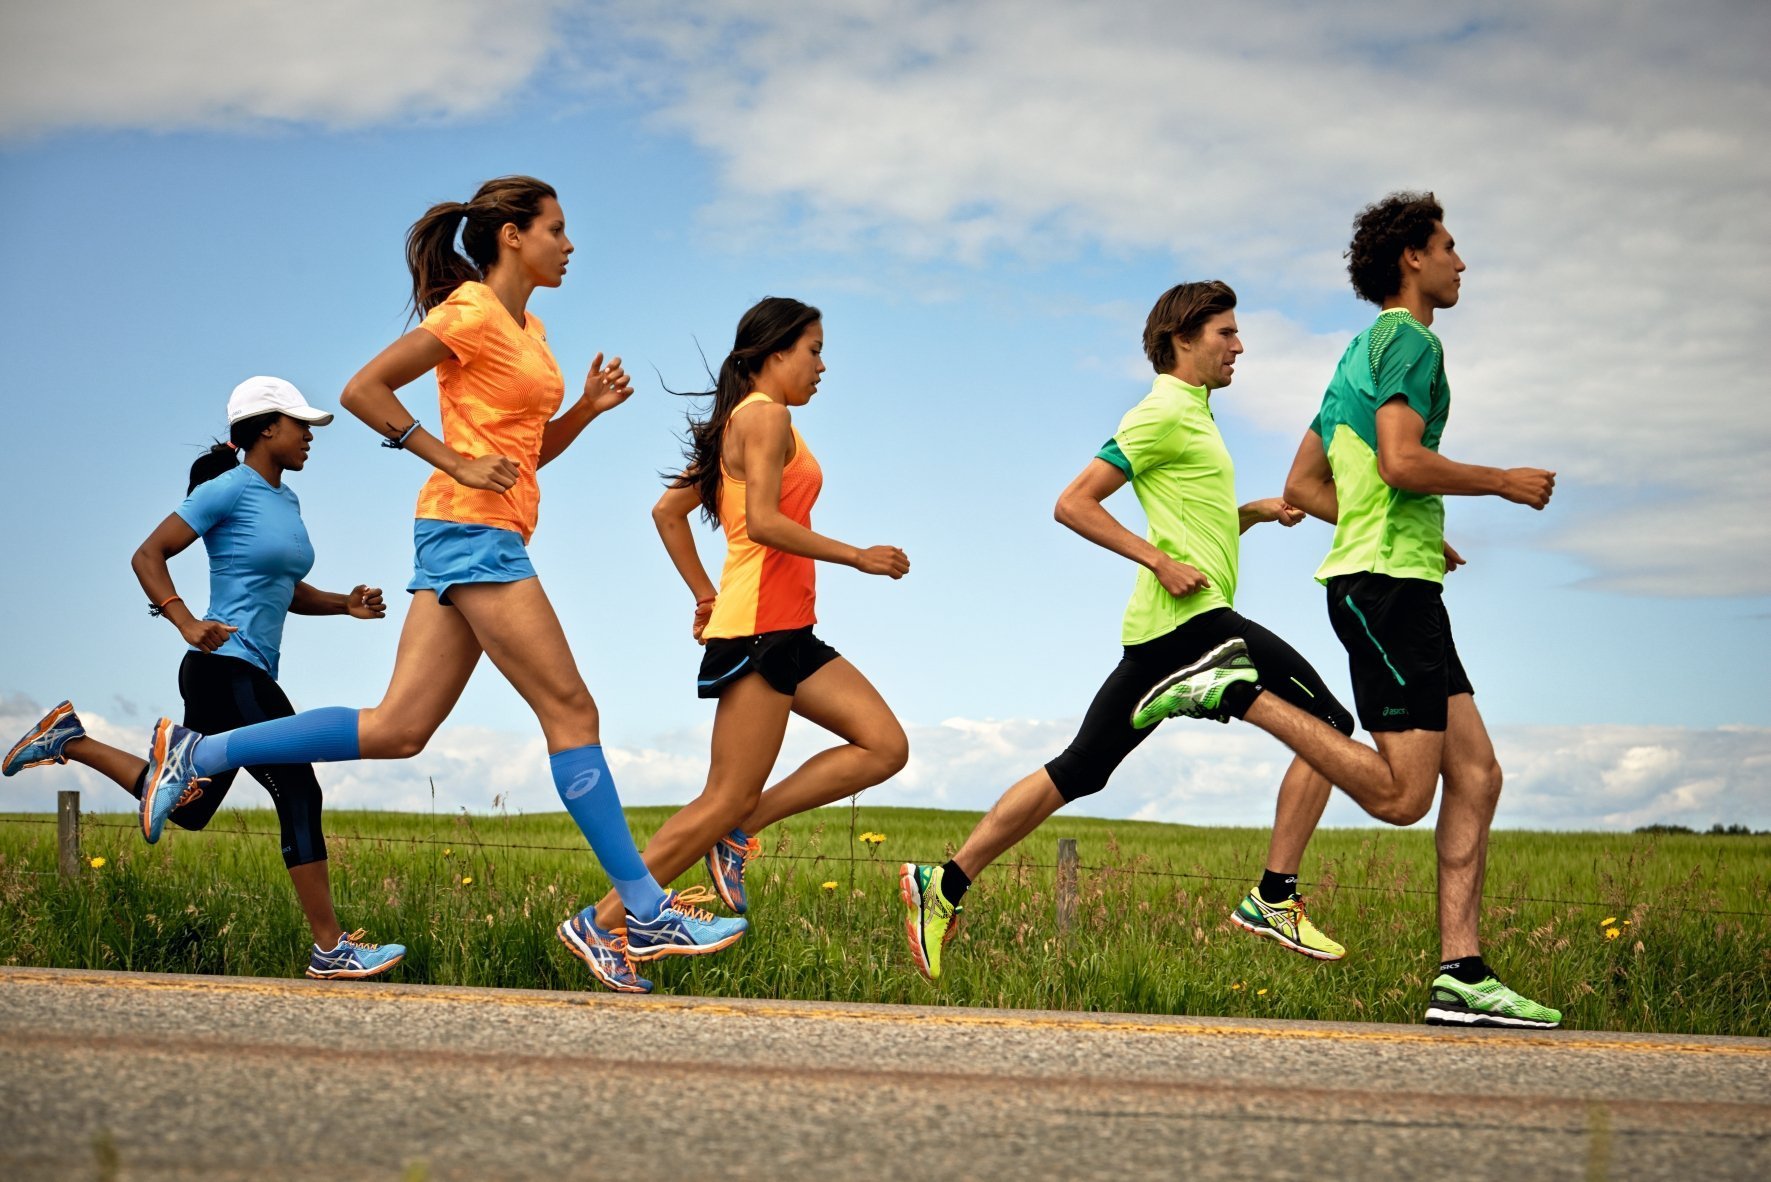 Двигательные действия человека. Спорт бег. Спортивные люди. Бегущий человек. Занятие физкультурой и спортом.